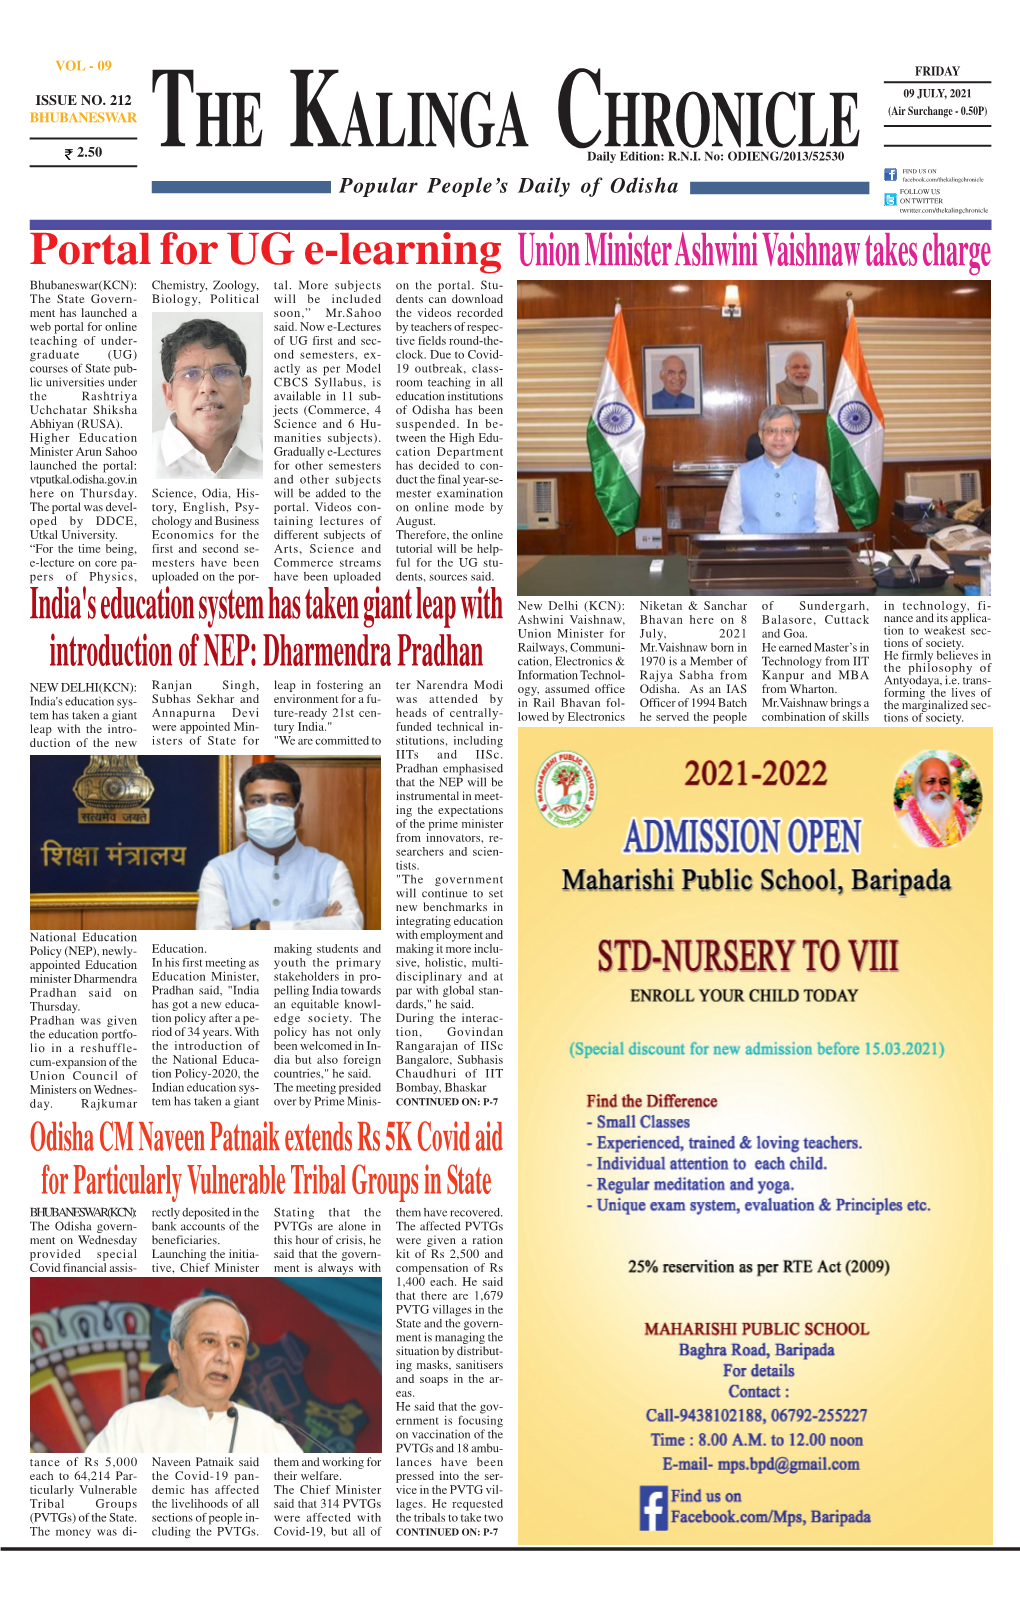 Union Minister Ashwini Vaishnaw Takes Charge Bhubaneswar(KCN): Chemistry, Zoology, Tal